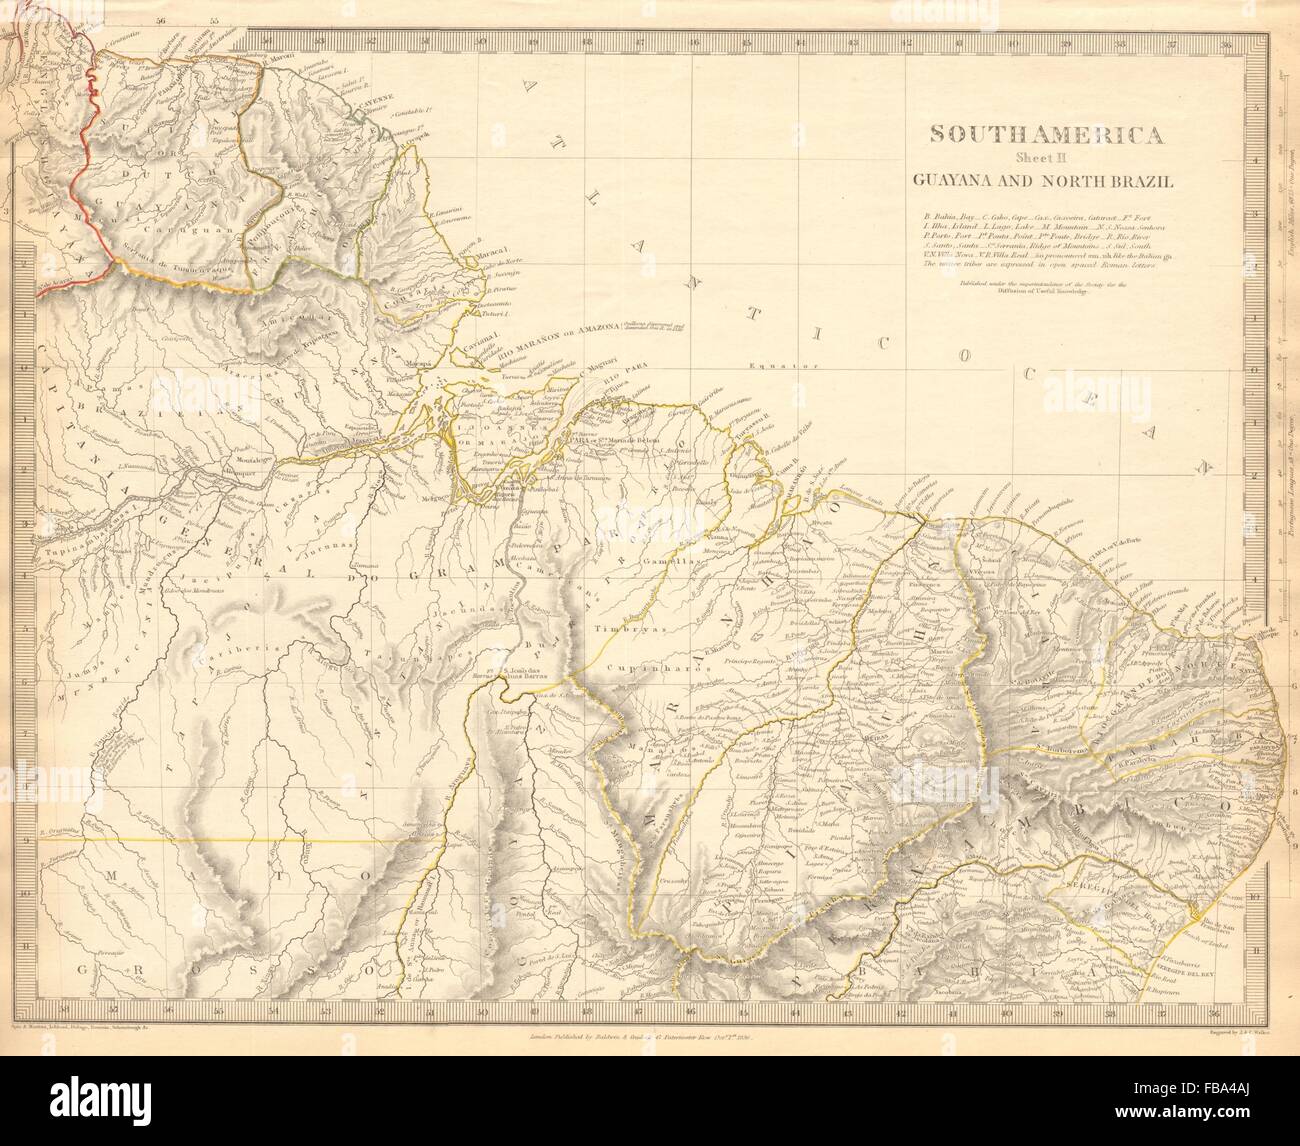 L'Amazonie. Montrant les tribus indiennes. Guyana Surinam Brésil. Recife. SDUK, 1844 map Banque D'Images